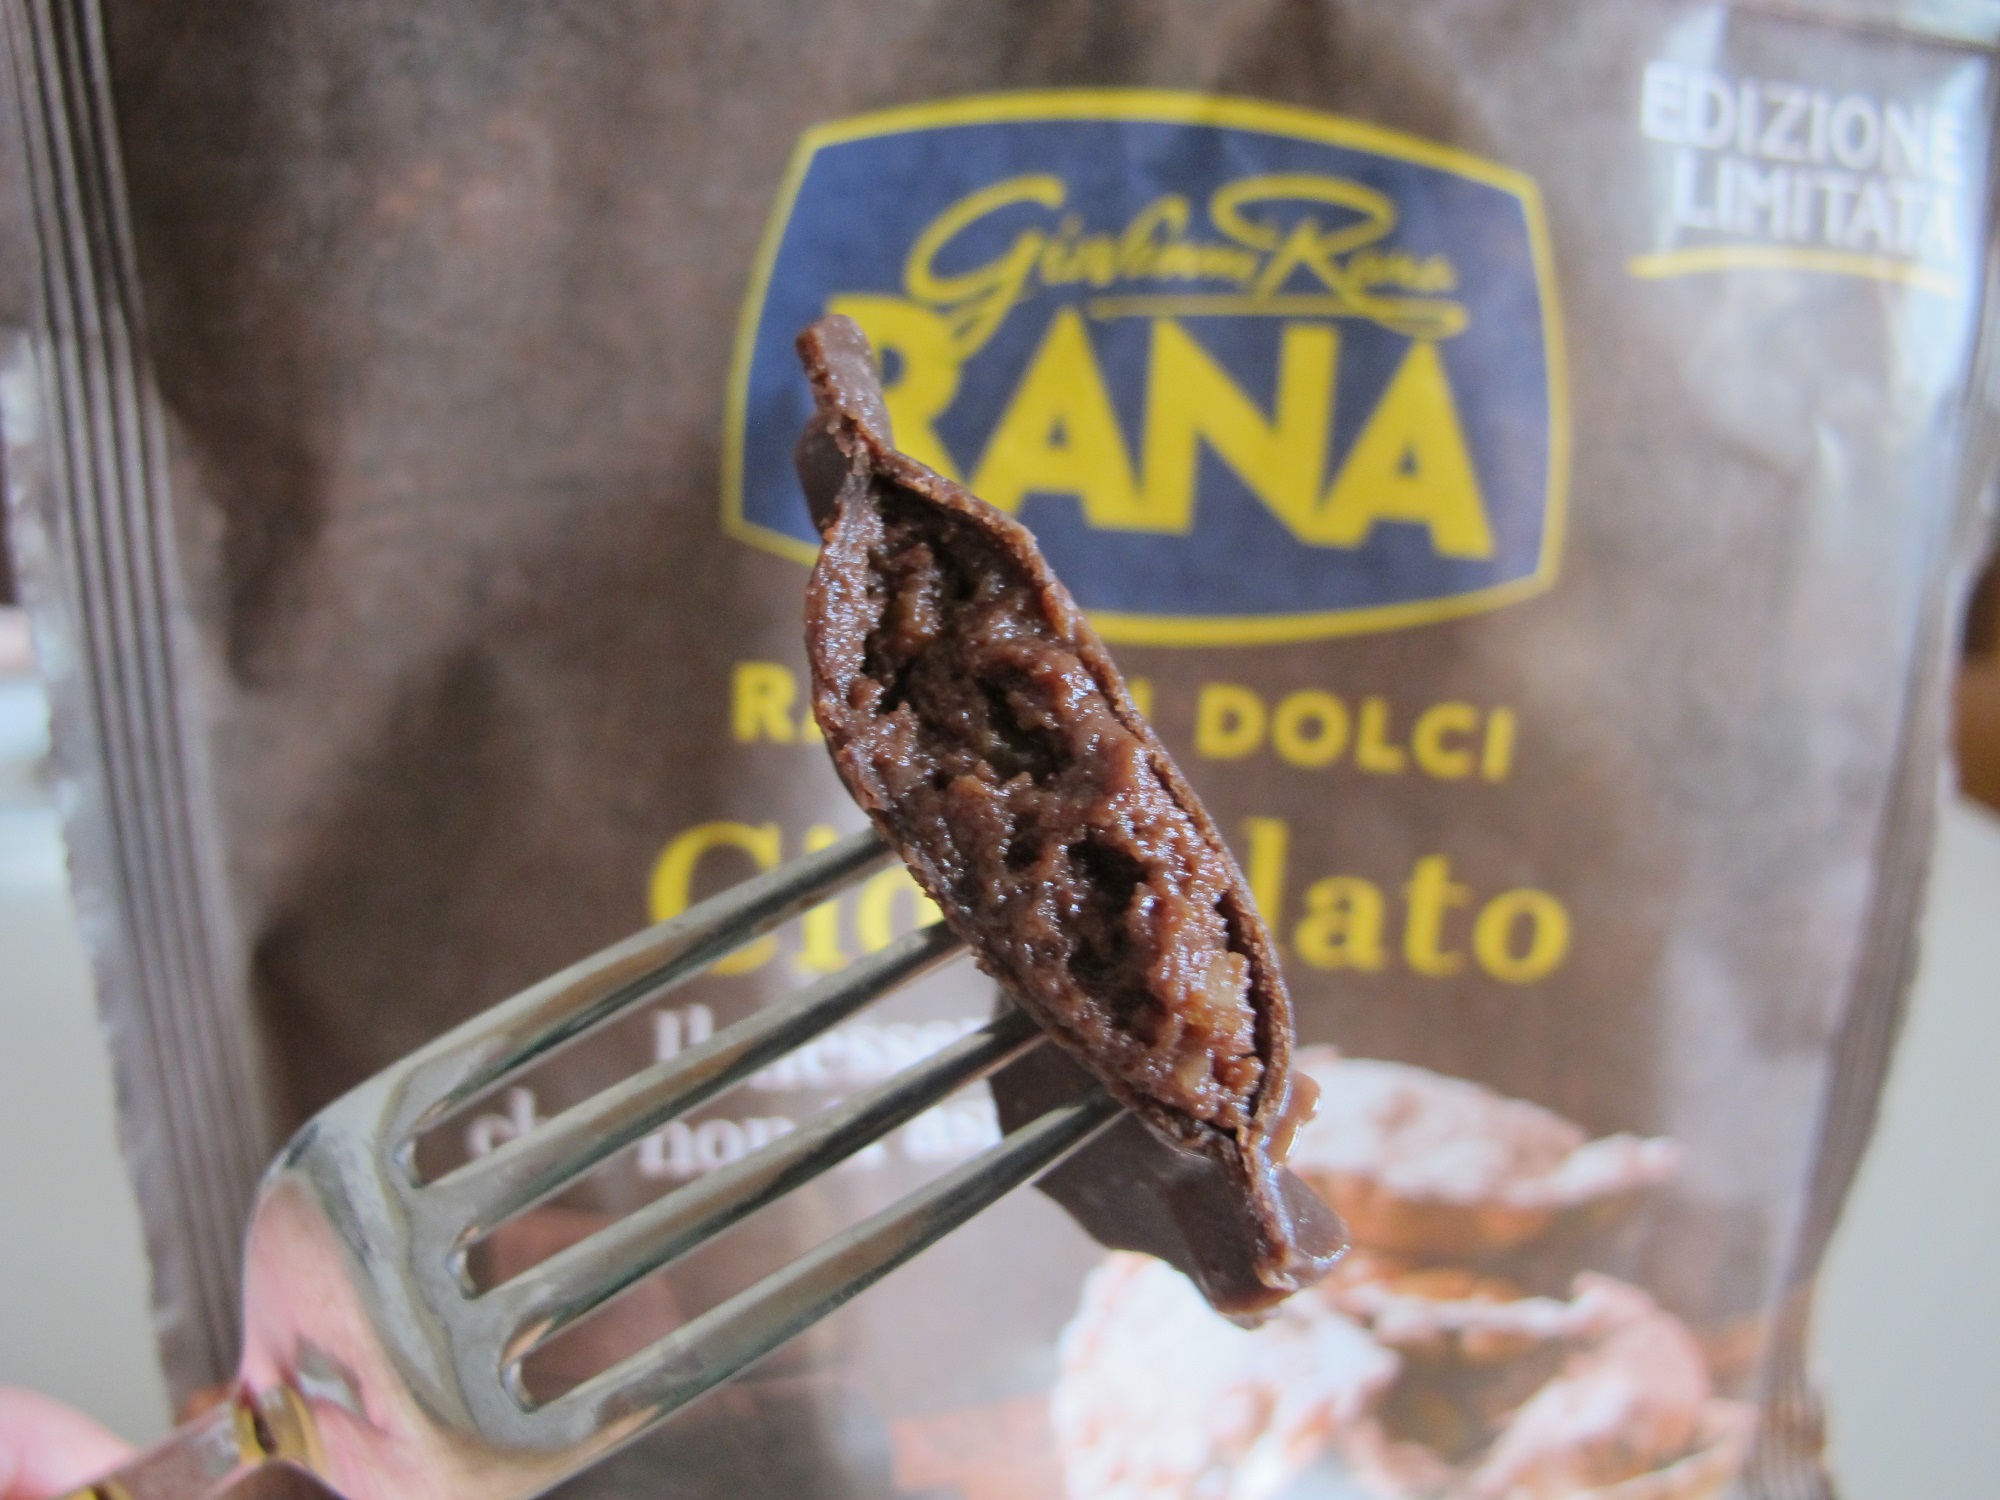 Ravioli dolci con cioccolato Giovanni Rana: Prova d'assaggio